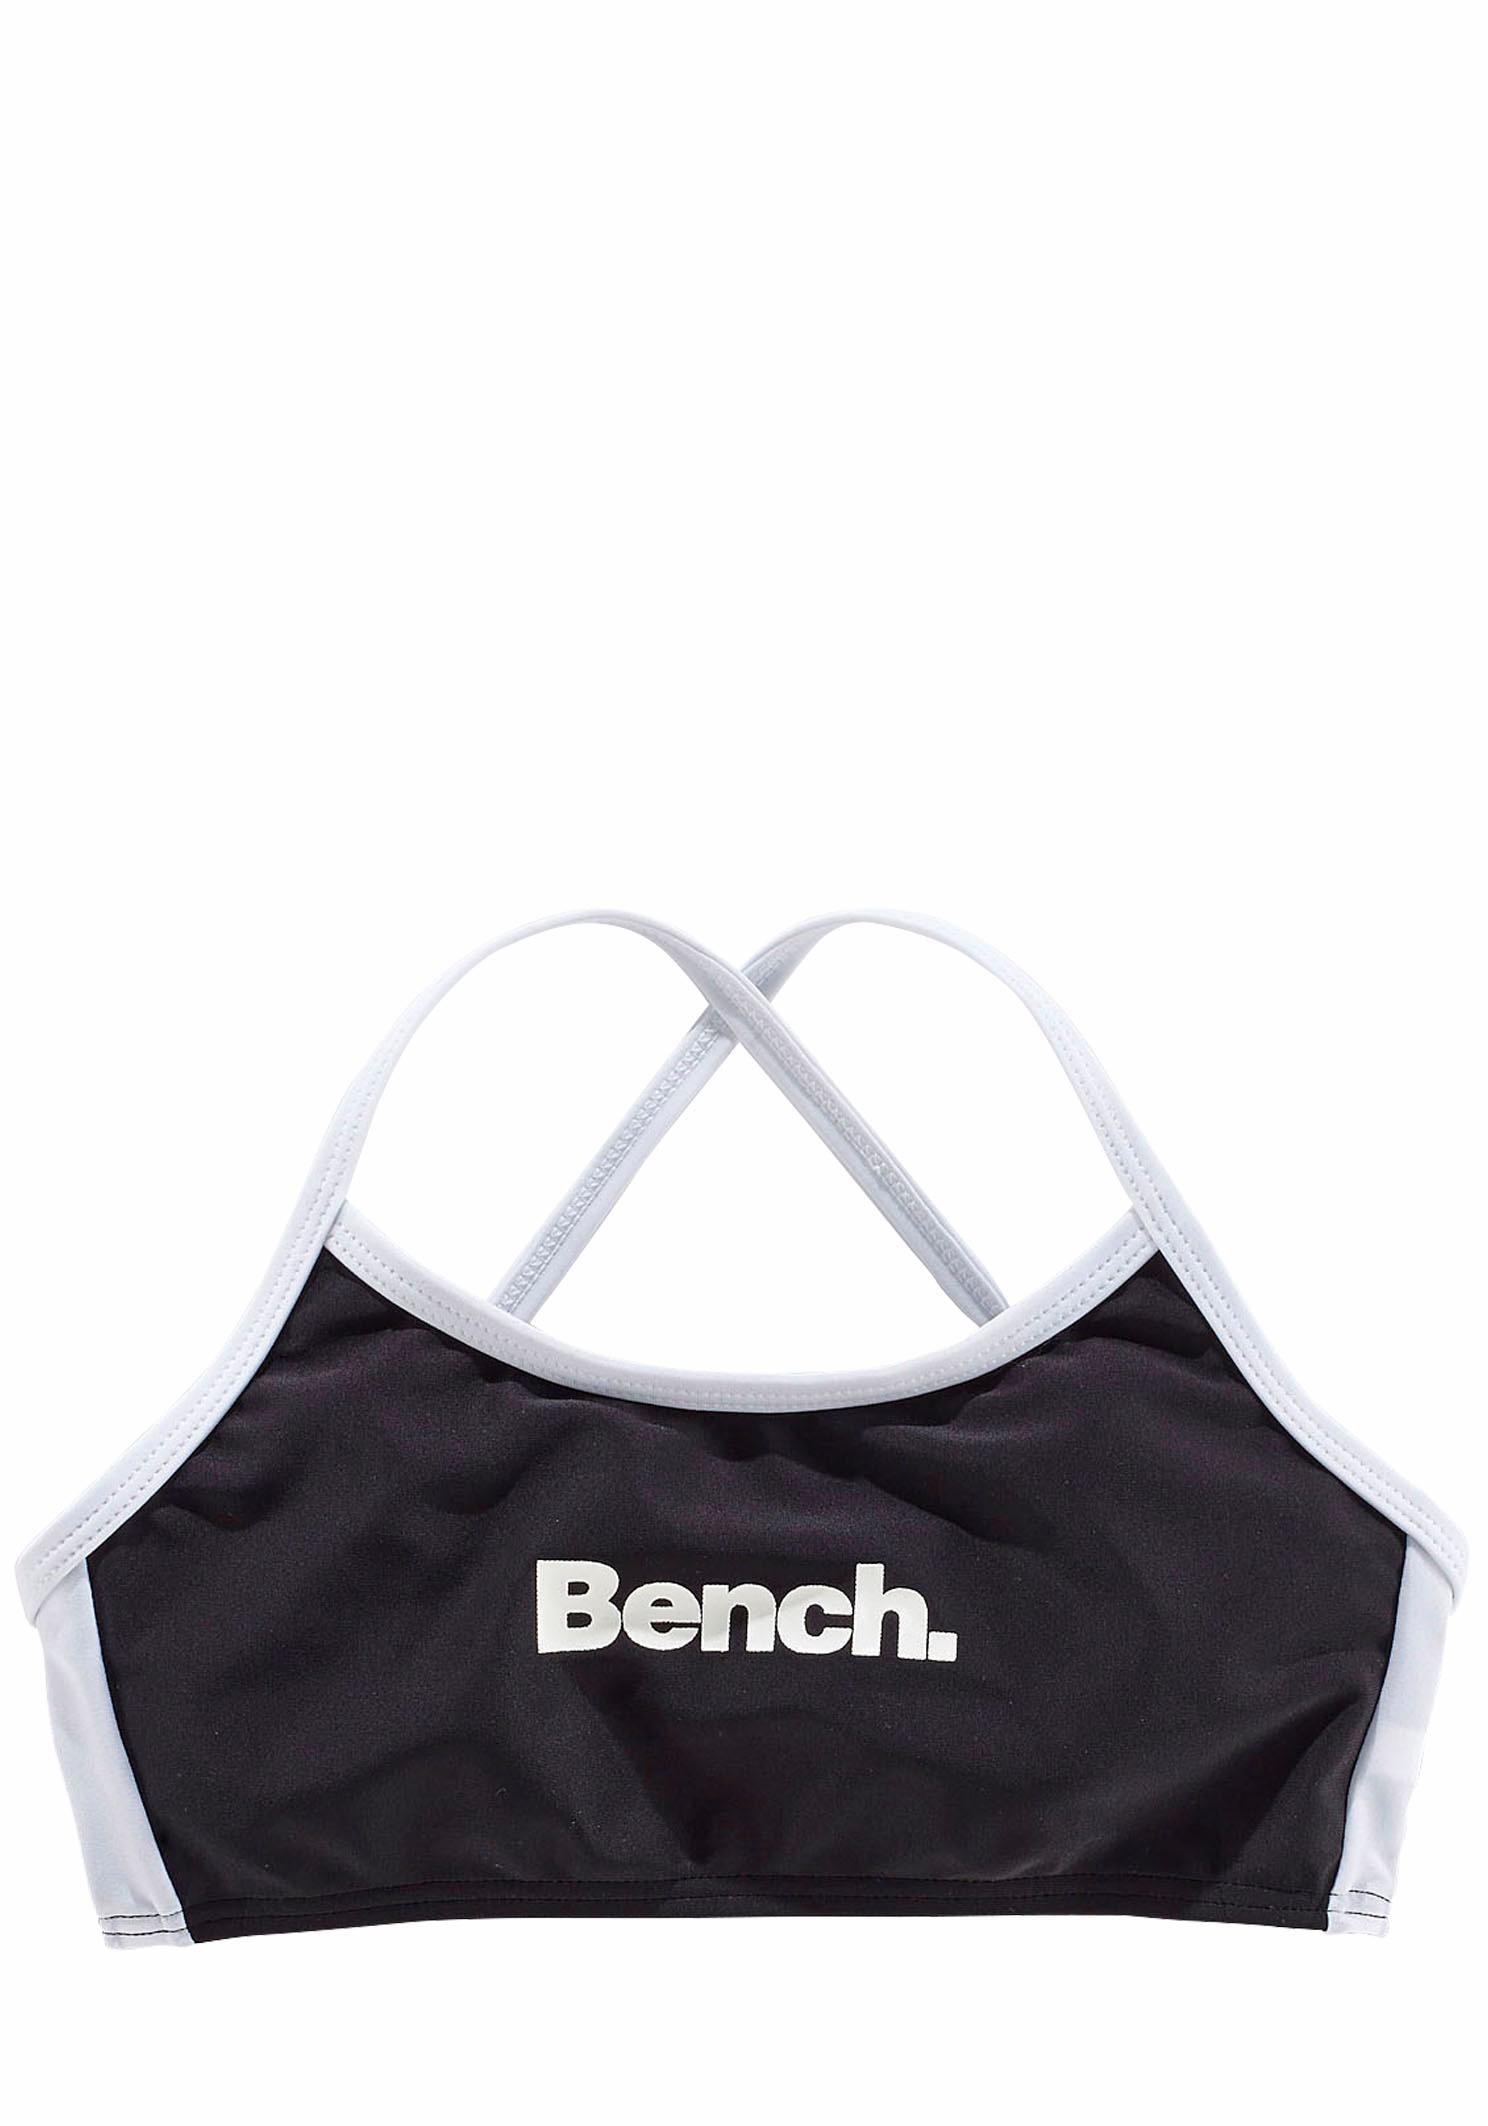 Bench. Bustier-Bikini mit regulierbaren Trägern online kaufen | BAUR | Bustier-Bikinis